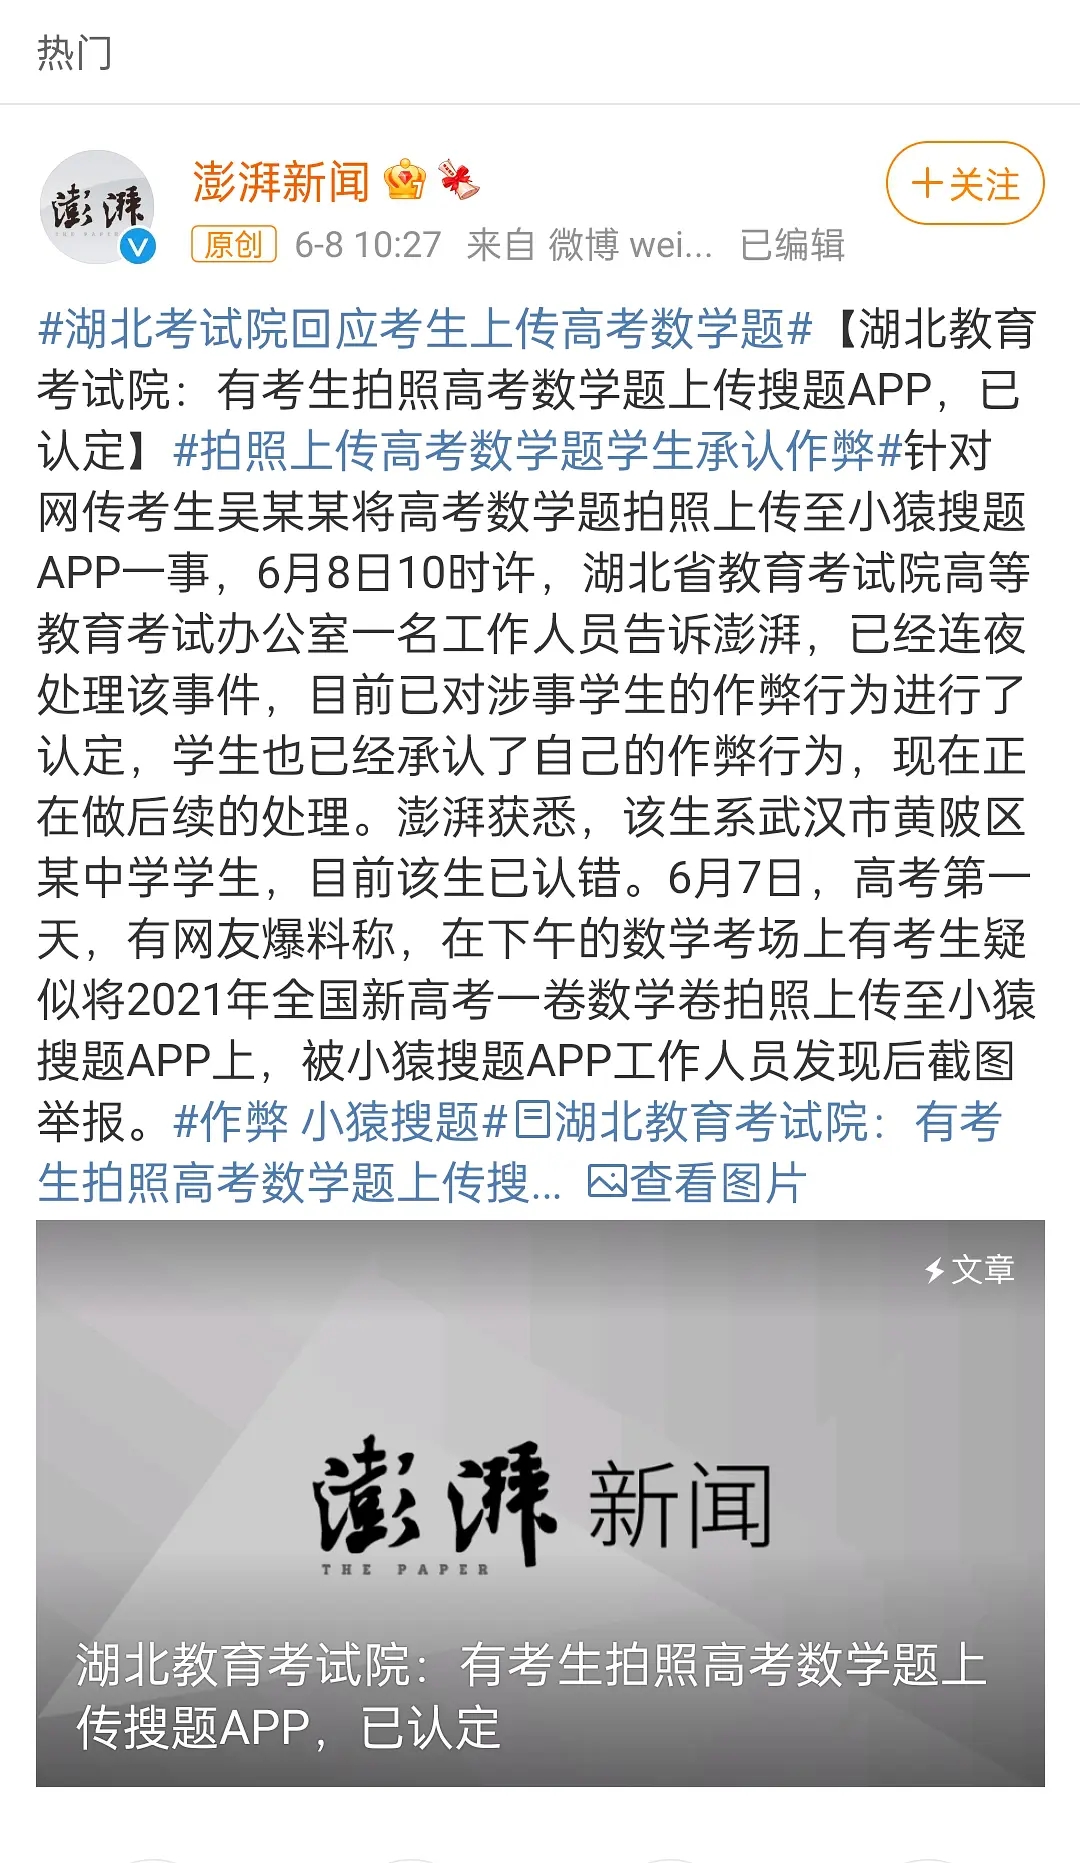 中国教育部通报湖北高考生作弊：将手机藏在薄衣带入考场 - 2021年6月9日, 俄罗斯卫星通讯社